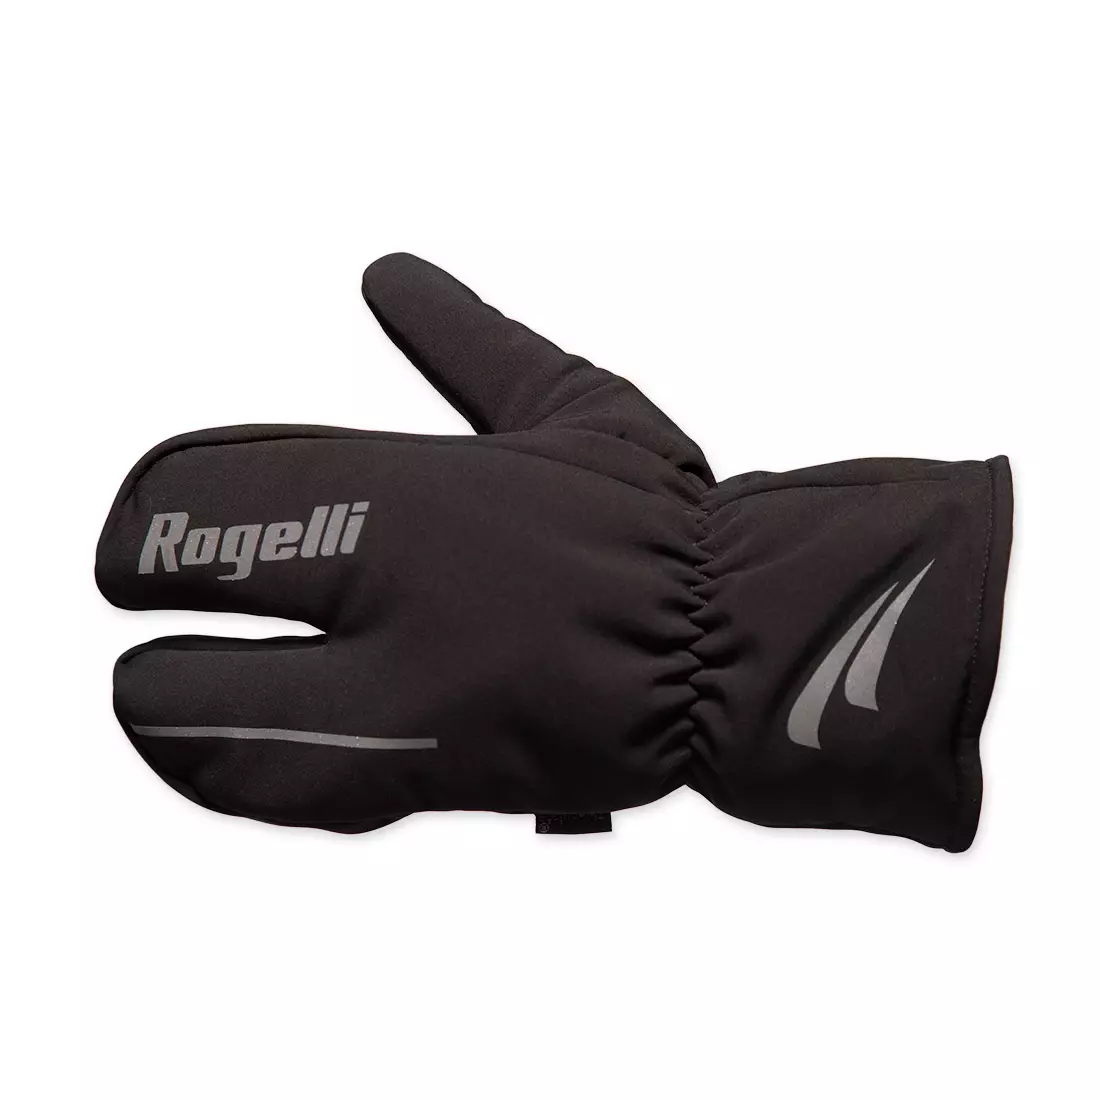 ROGELLI KENO zimní cyklistické rukavice, černé 006.103